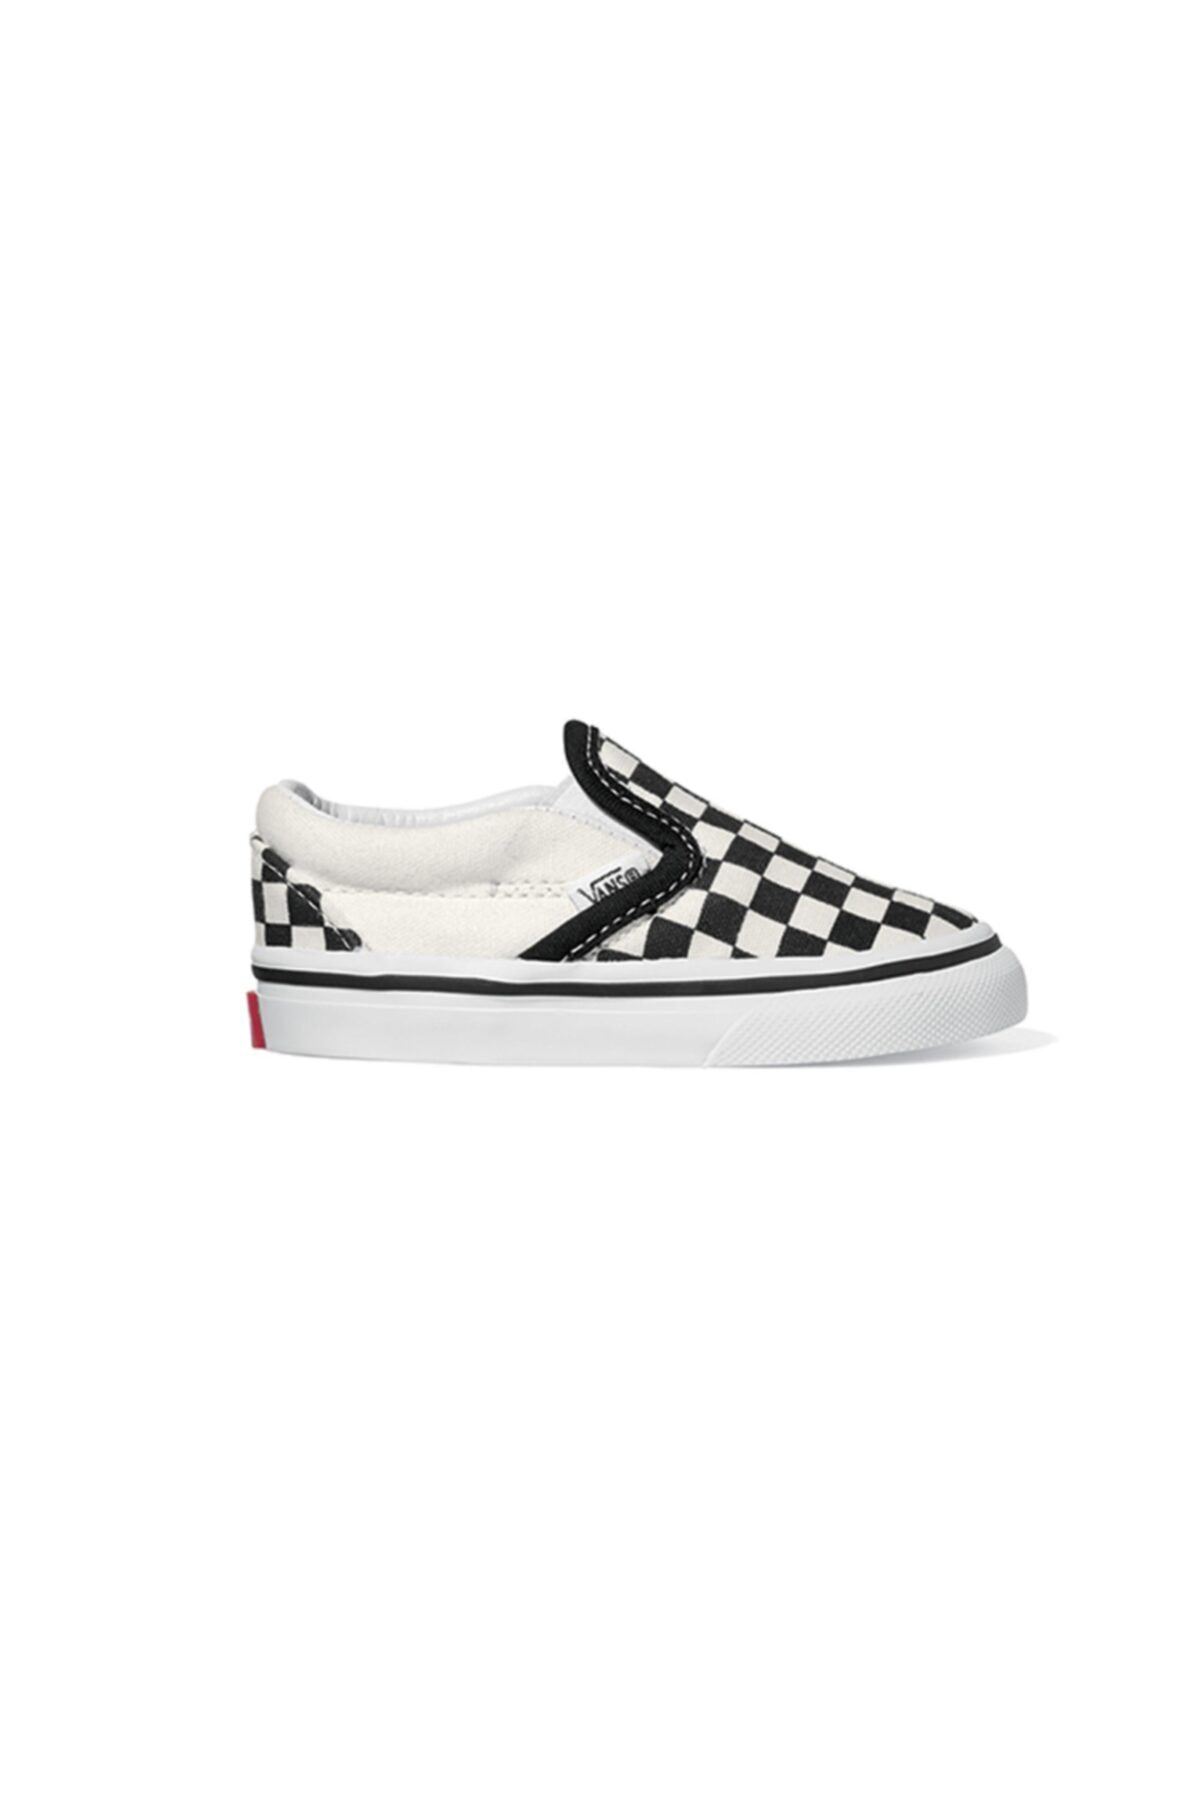 Vans Uy Classic Slip-on Checker White Çocuk Sneaker